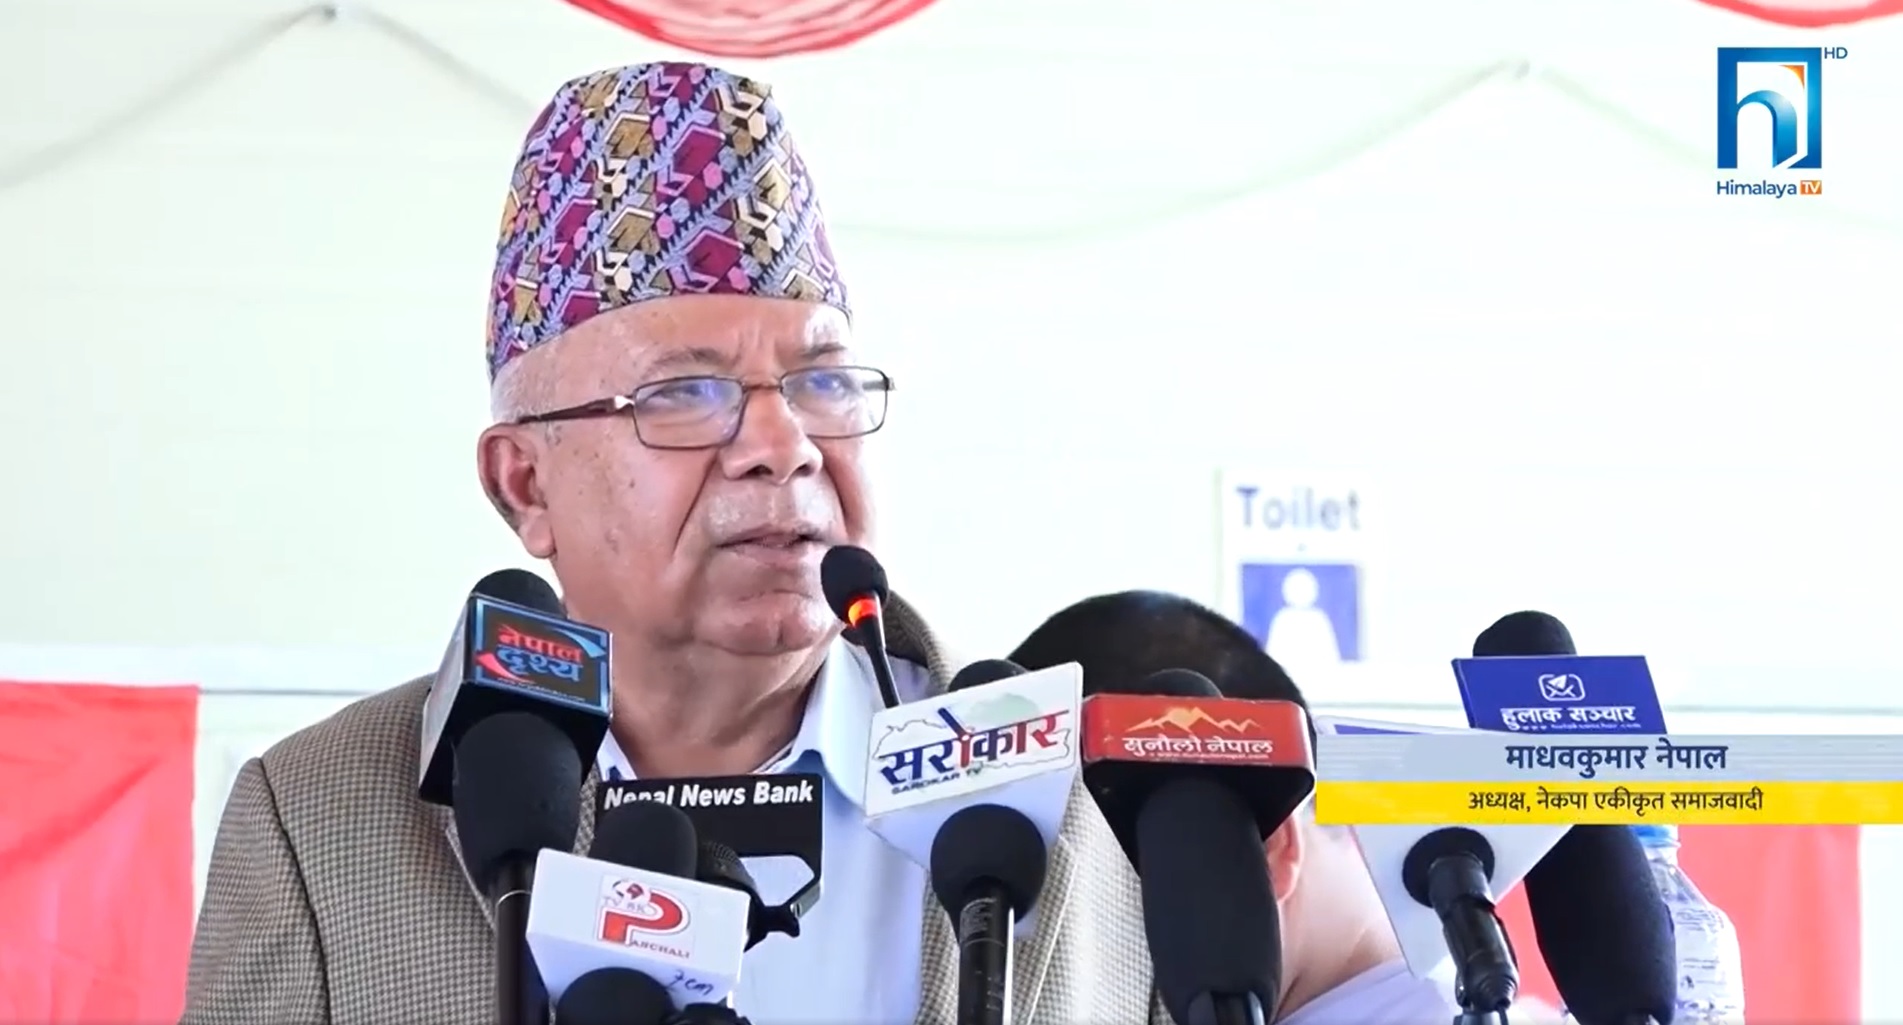 गठबन्धनले जनताको विश्वास जित्दै आएको छ : अध्यक्ष नेपाल